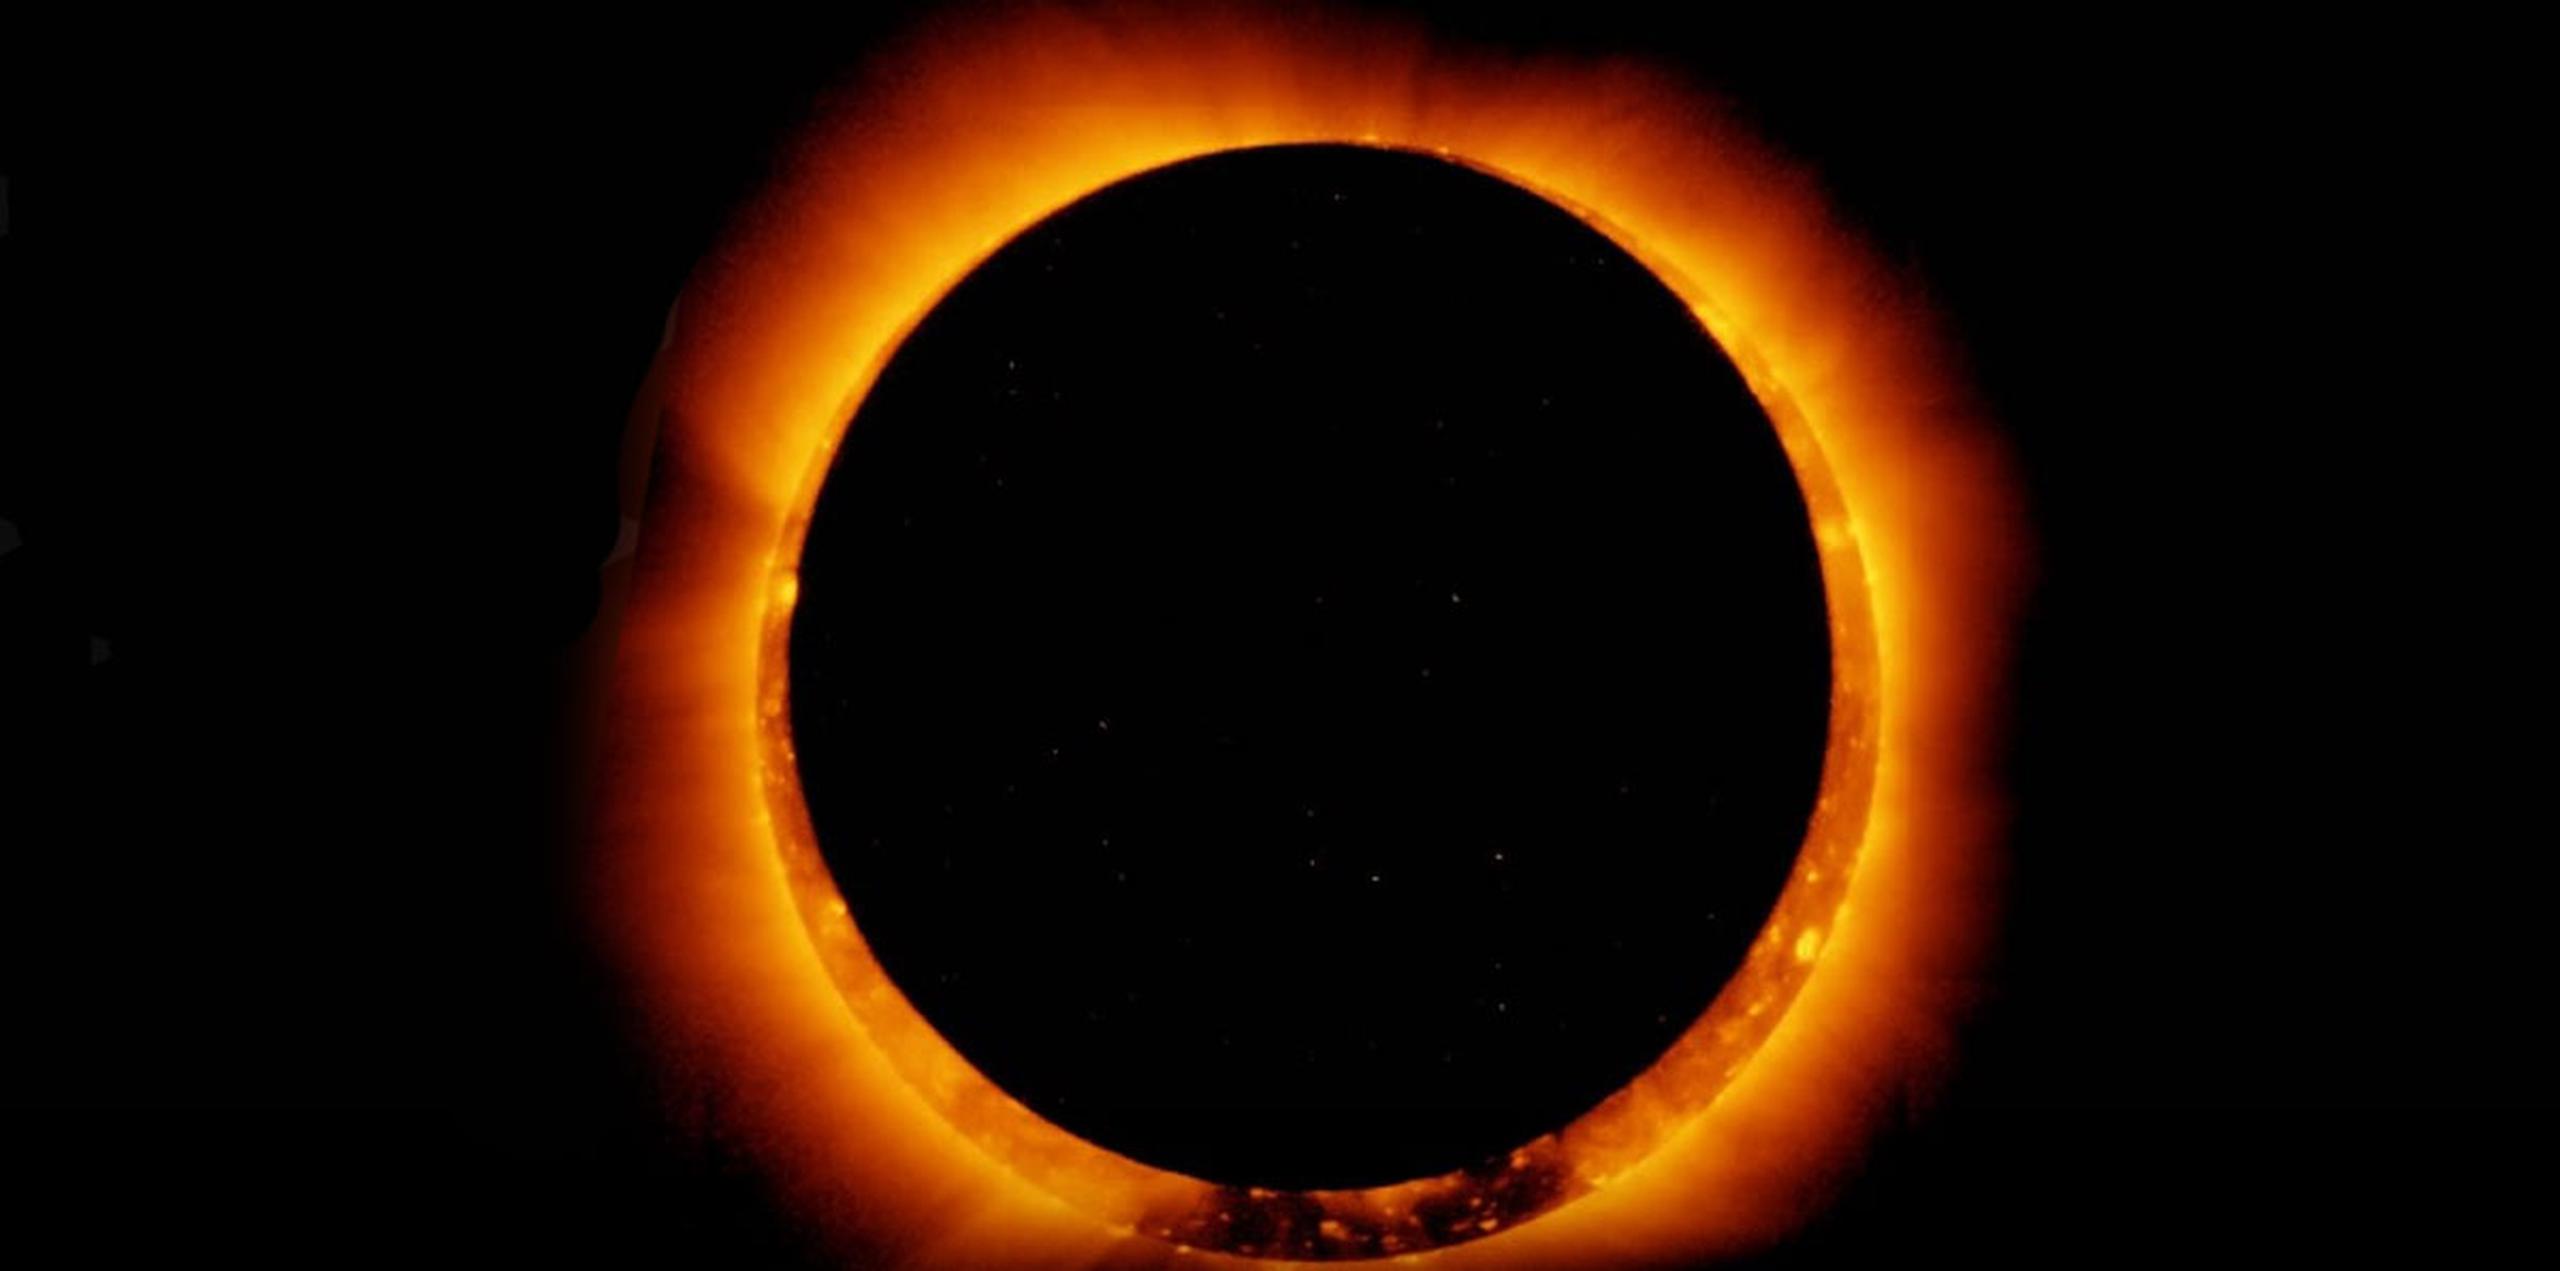 Durante este eclipse solar anular, la luna cubrirá el centro del sol, formando lo que se conoce en astronomía como un “anillo de fuego”.